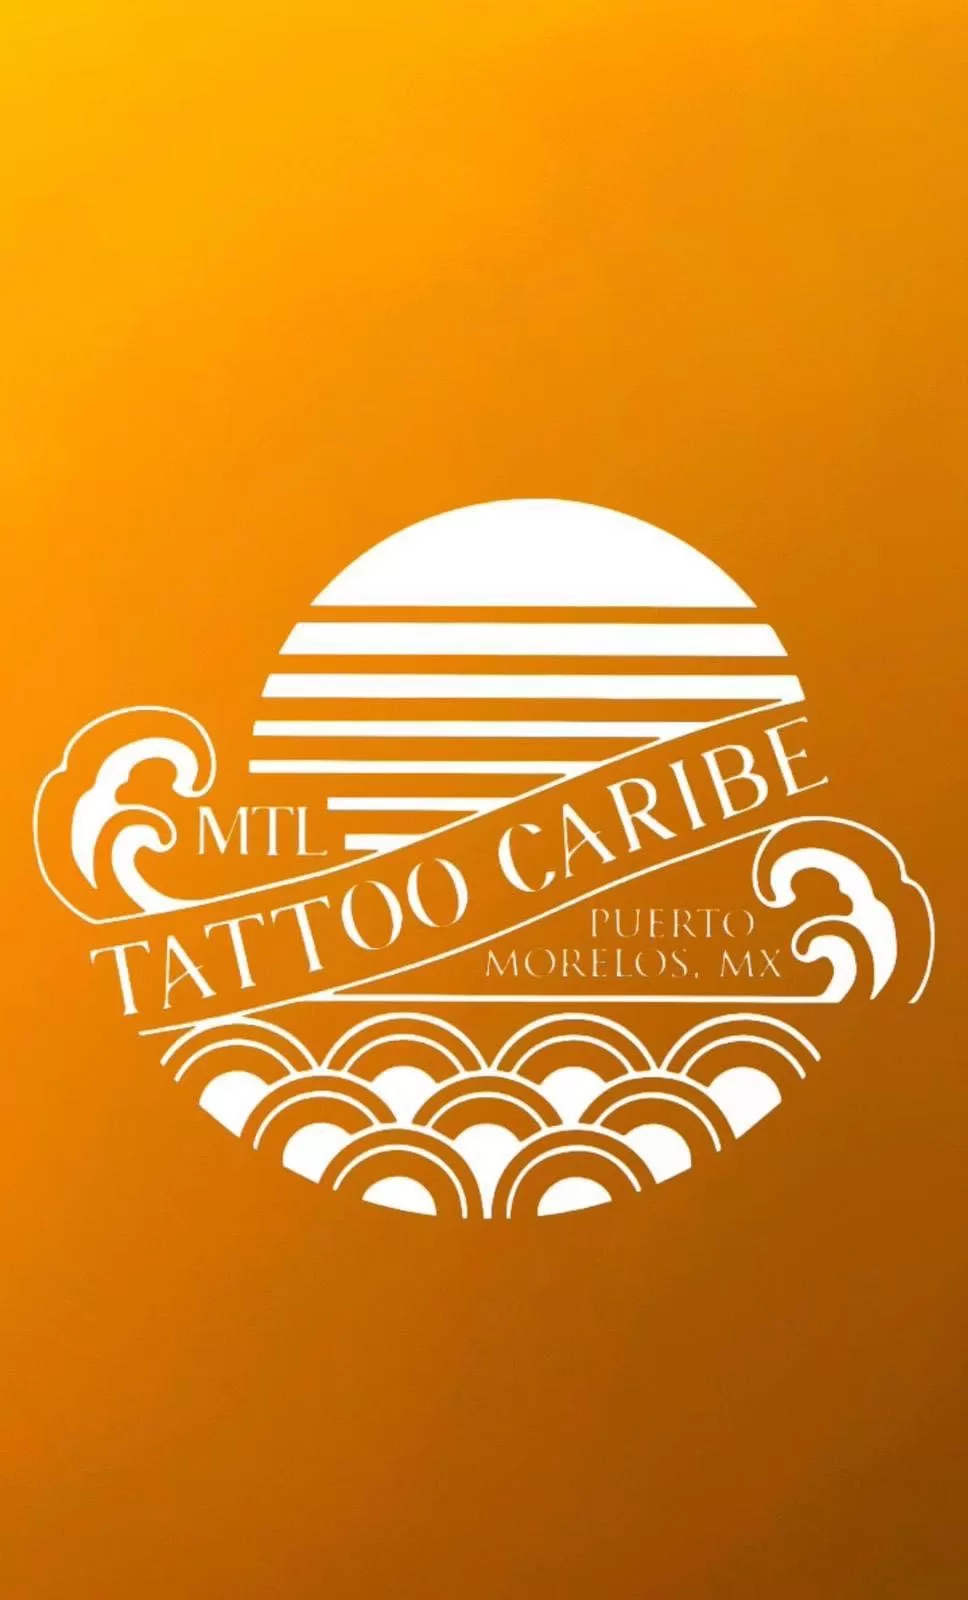 Mtl Tattoo Caribe